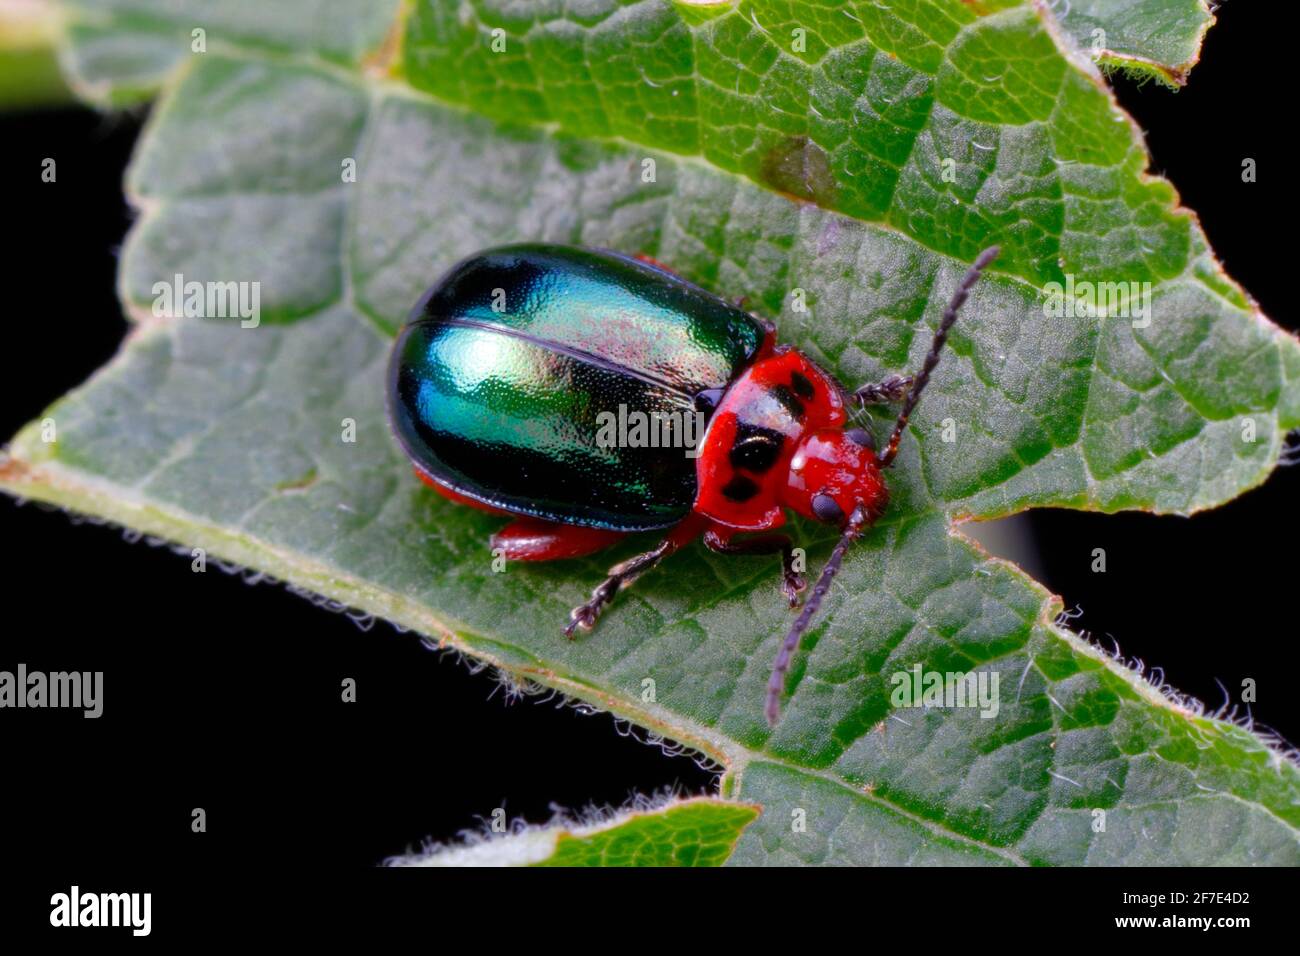 Un escarabajo iridiscente de la familia del escarabajo del olmo se arrastra sobre una hoja. Foto de stock